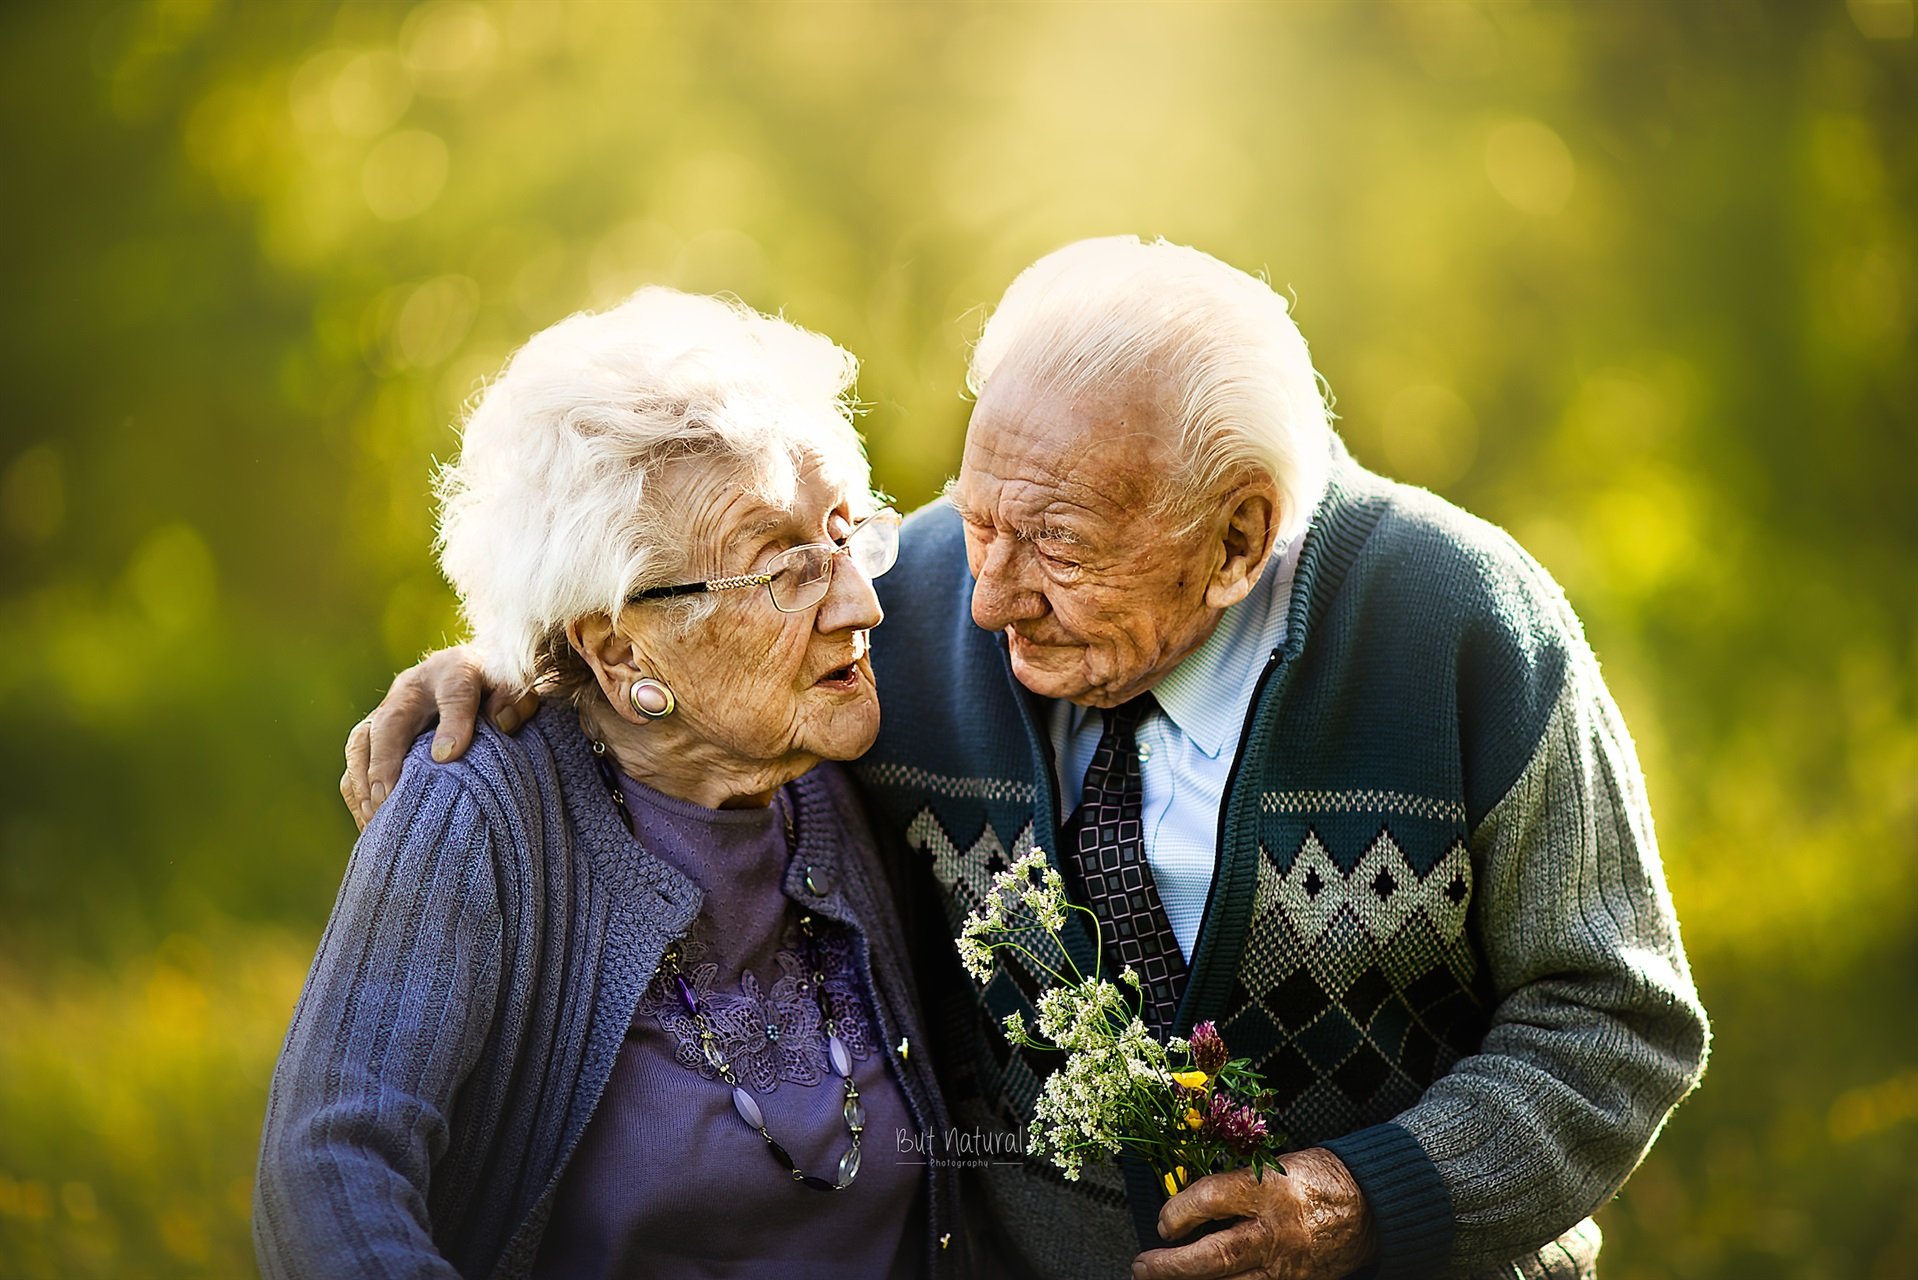 Пожилыми считаются люди в возрасте